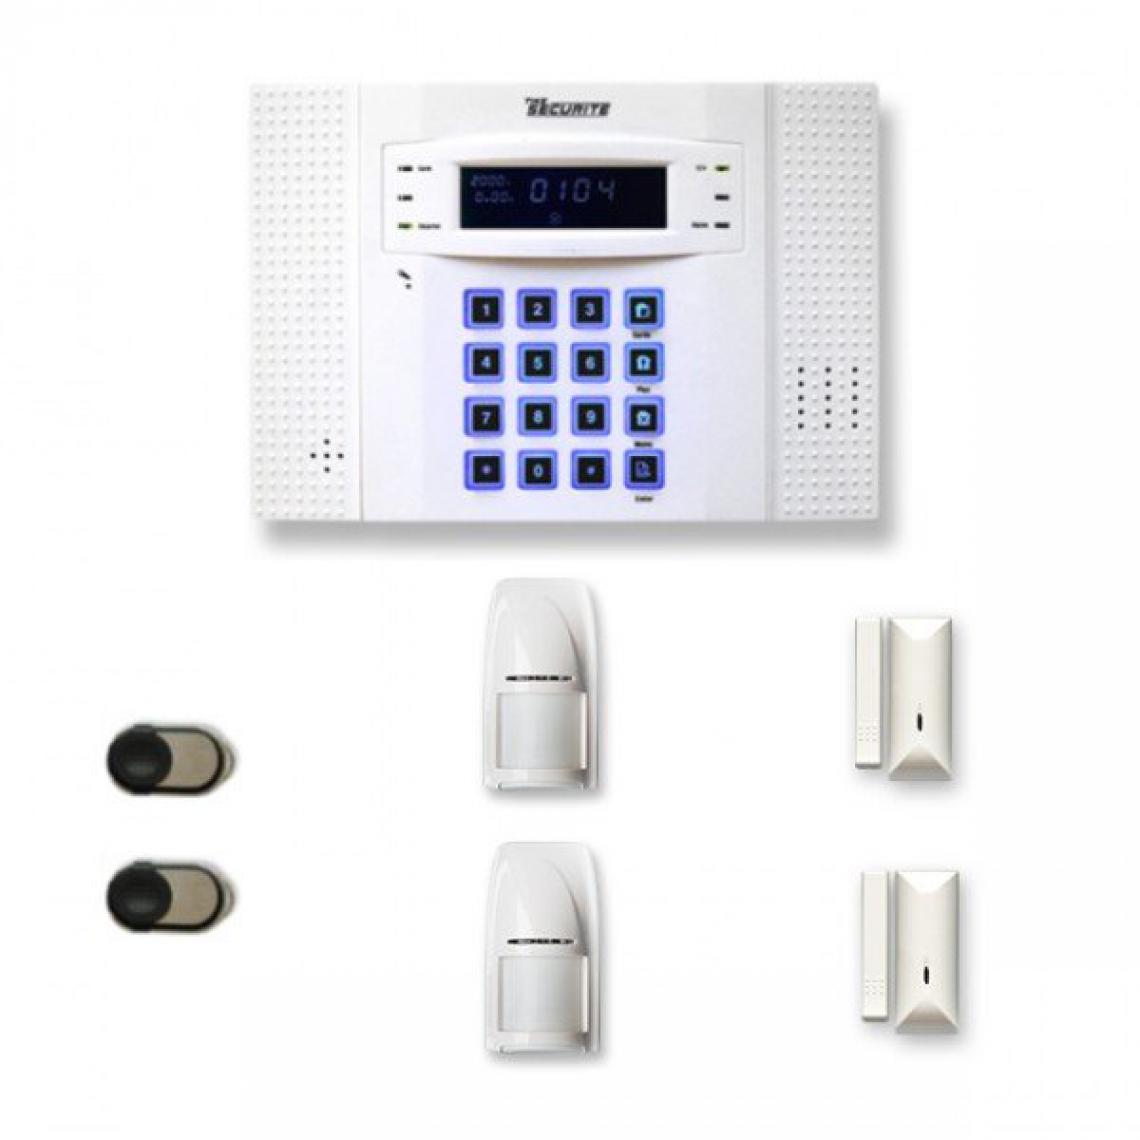 Tike Securite - Alarme maison sans fil DNB20 Compatible Box internet et GSM - Alarme connectée